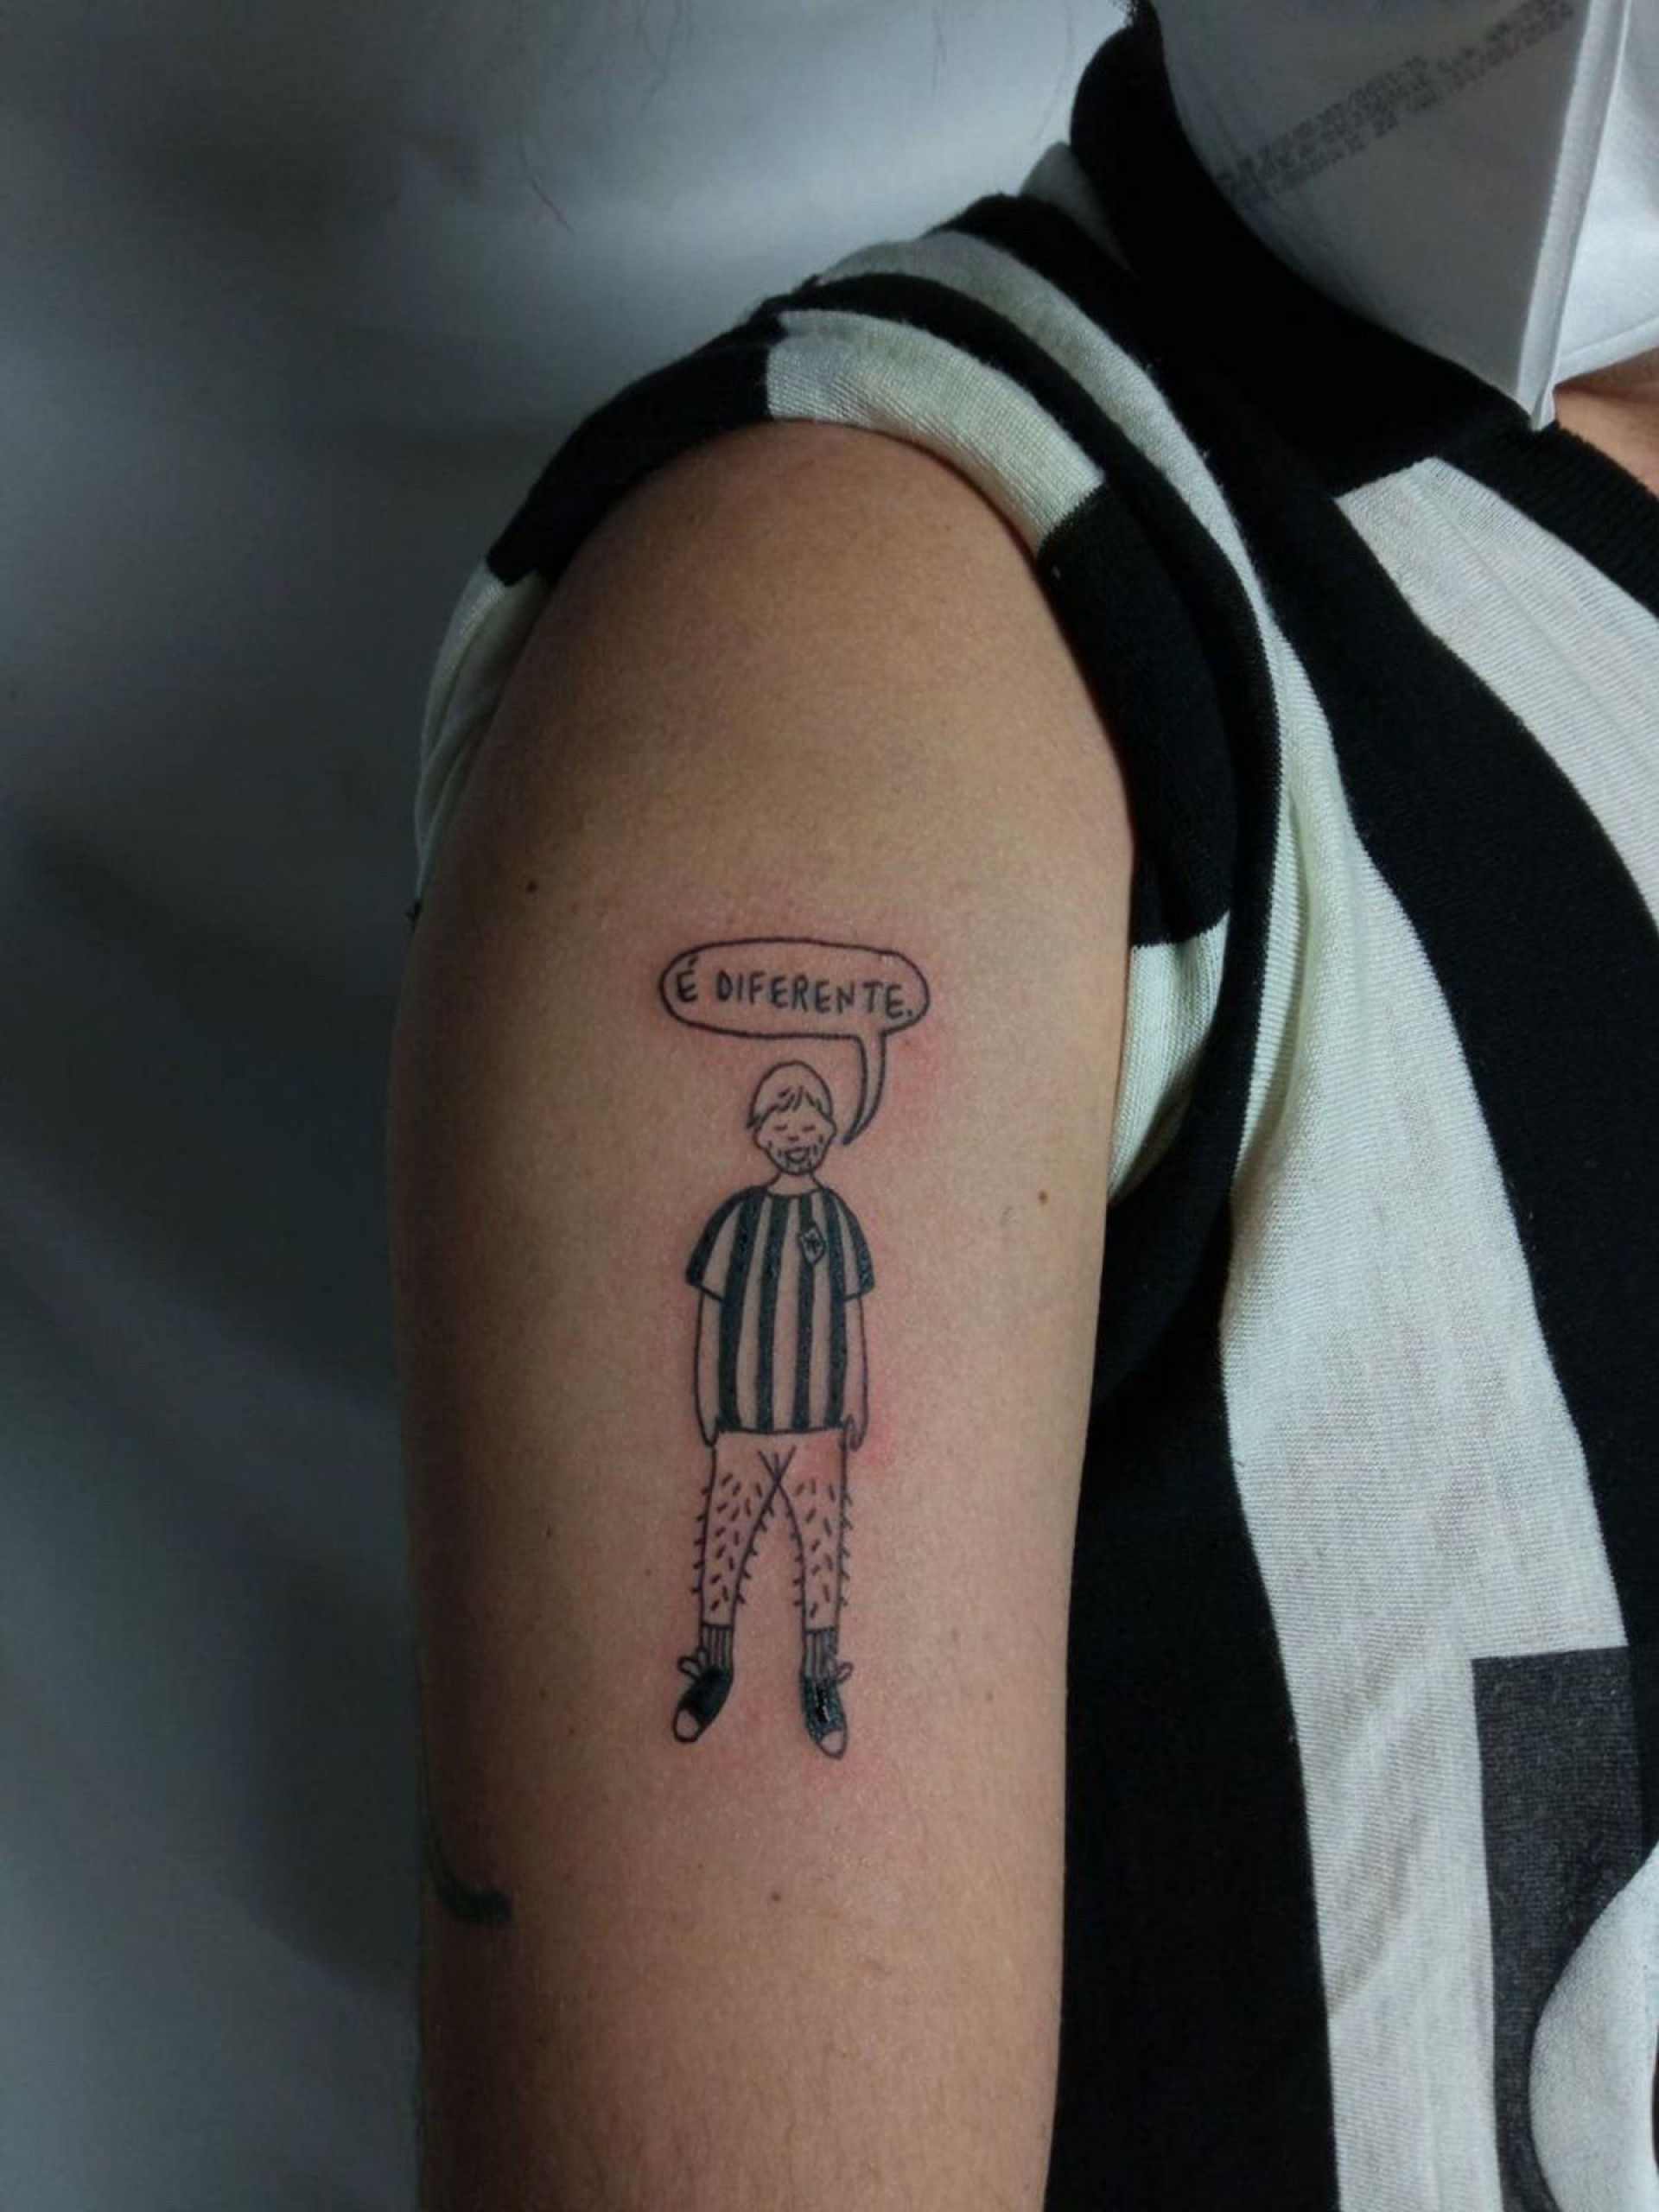 Theo Fish tatuou uma versão homem trans da mascote do Botafogo (Foto: Acervo pessoal)